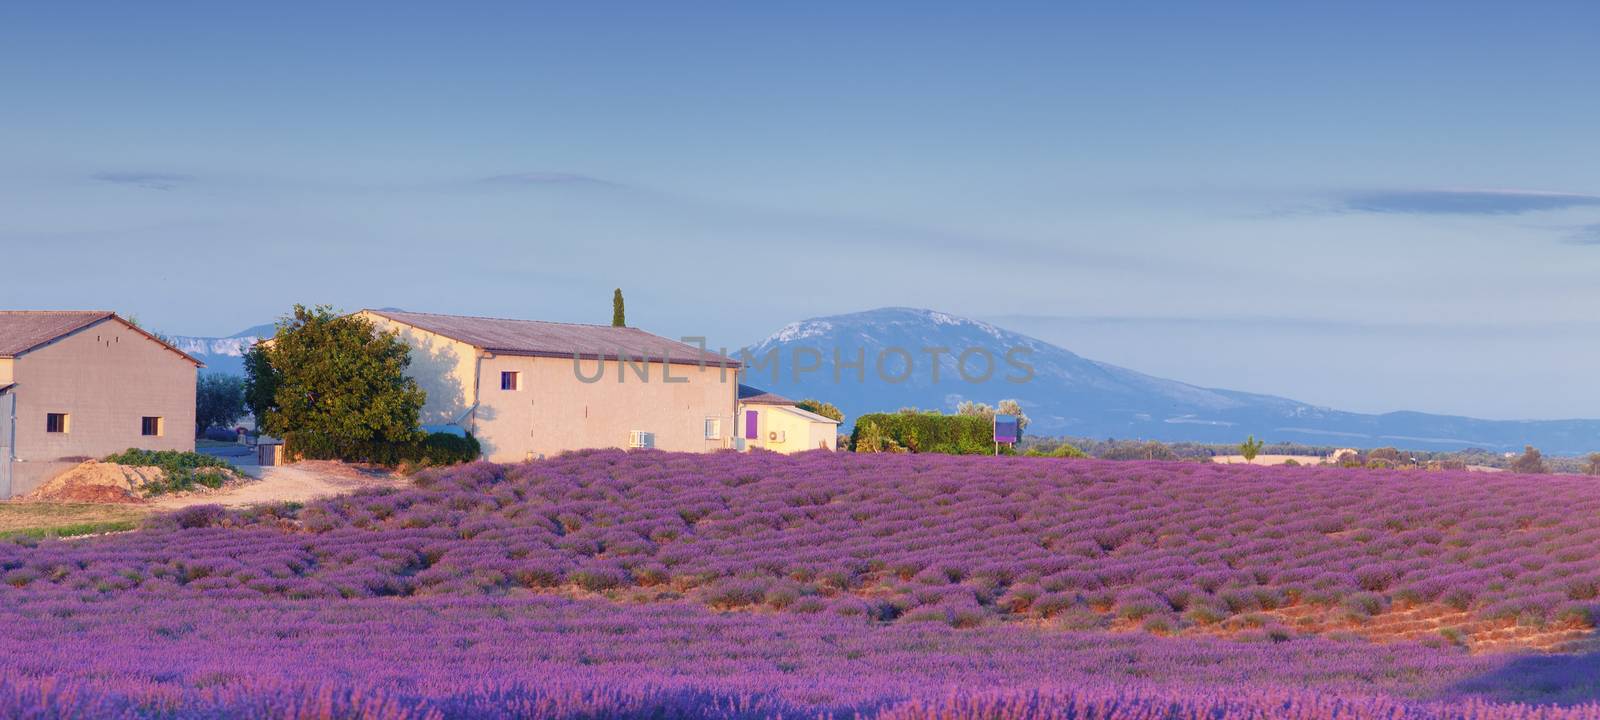 Valensole.Provence by vicnt